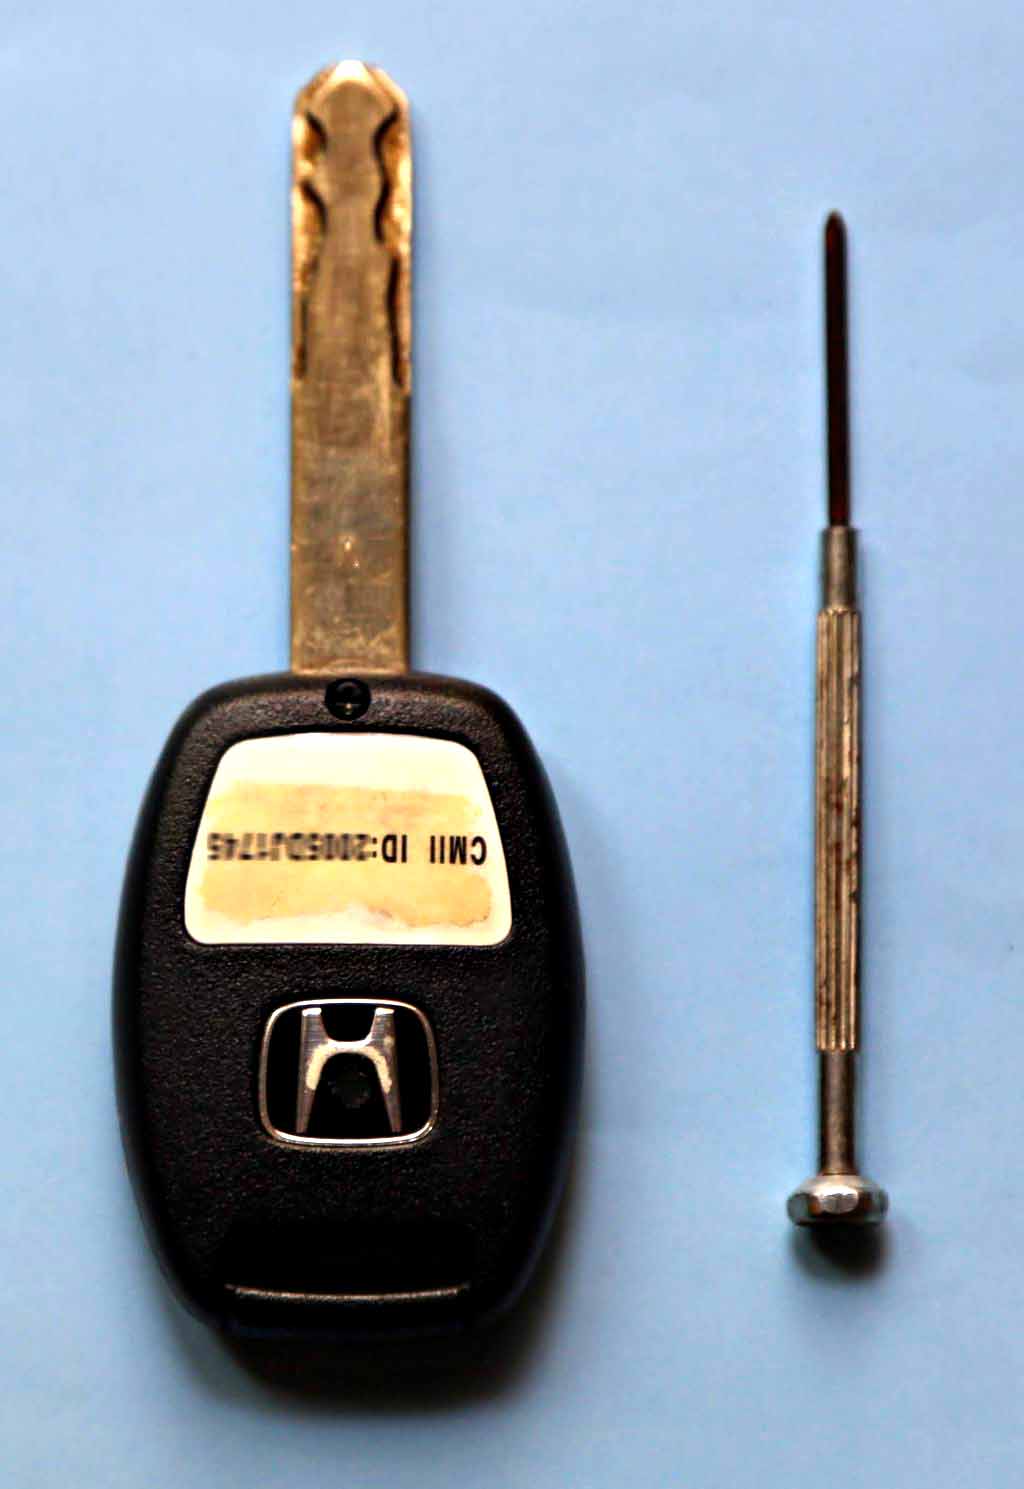 2009款本田crv钥匙电池图片